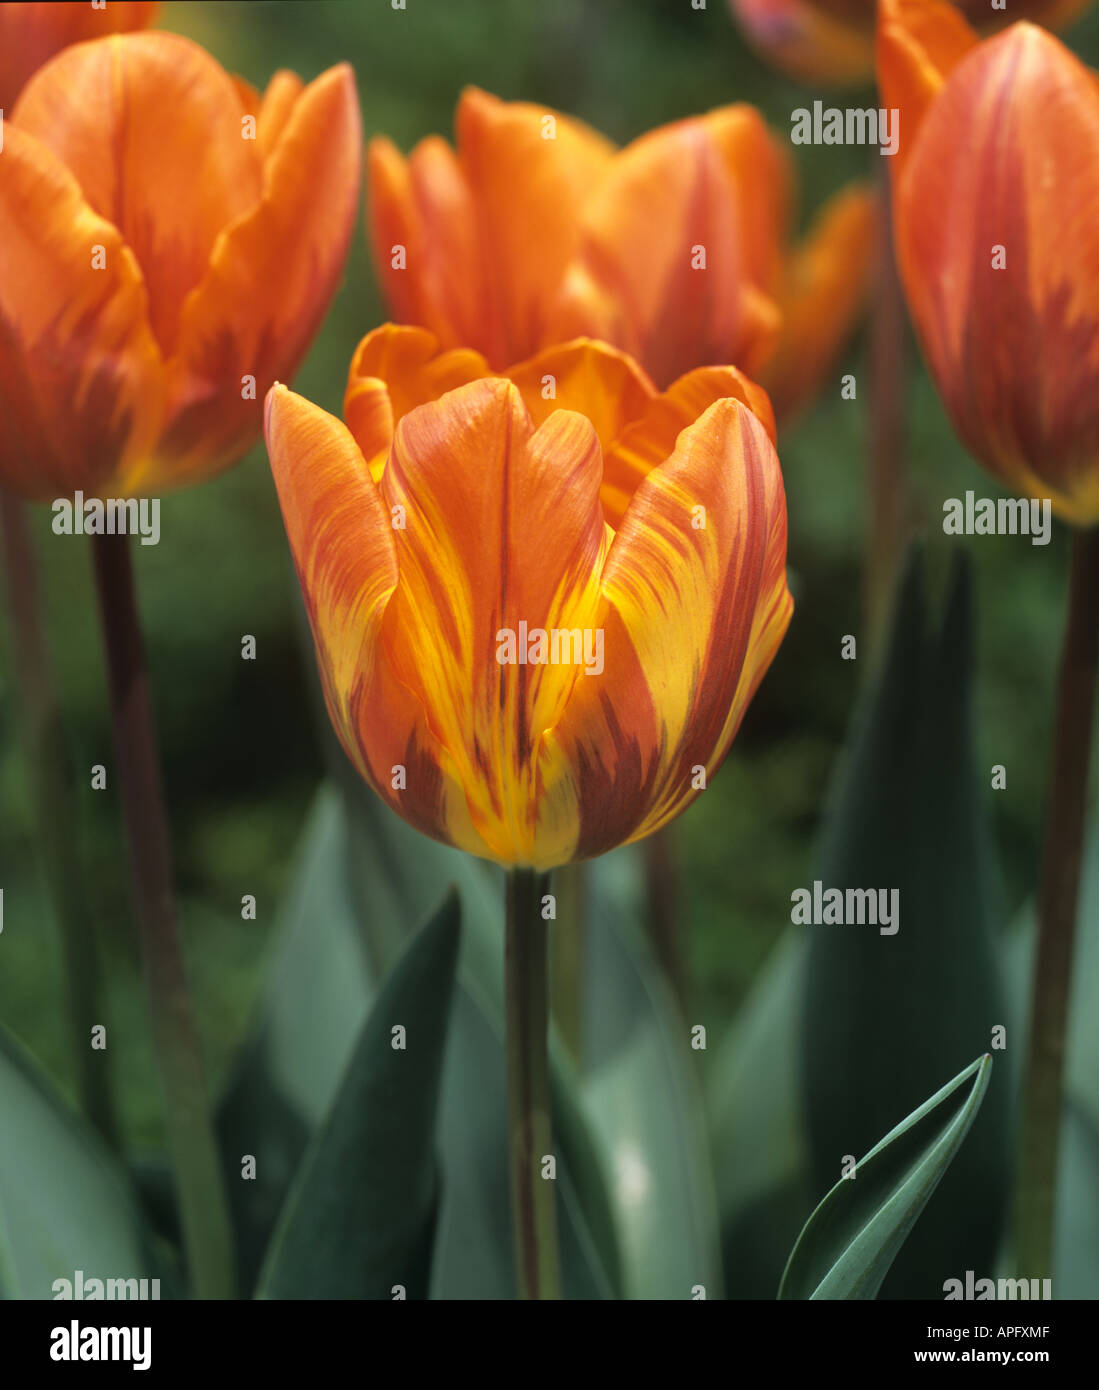 Fiore di tulip principessa Irene con insoliti e di variazione di colore Foto Stock